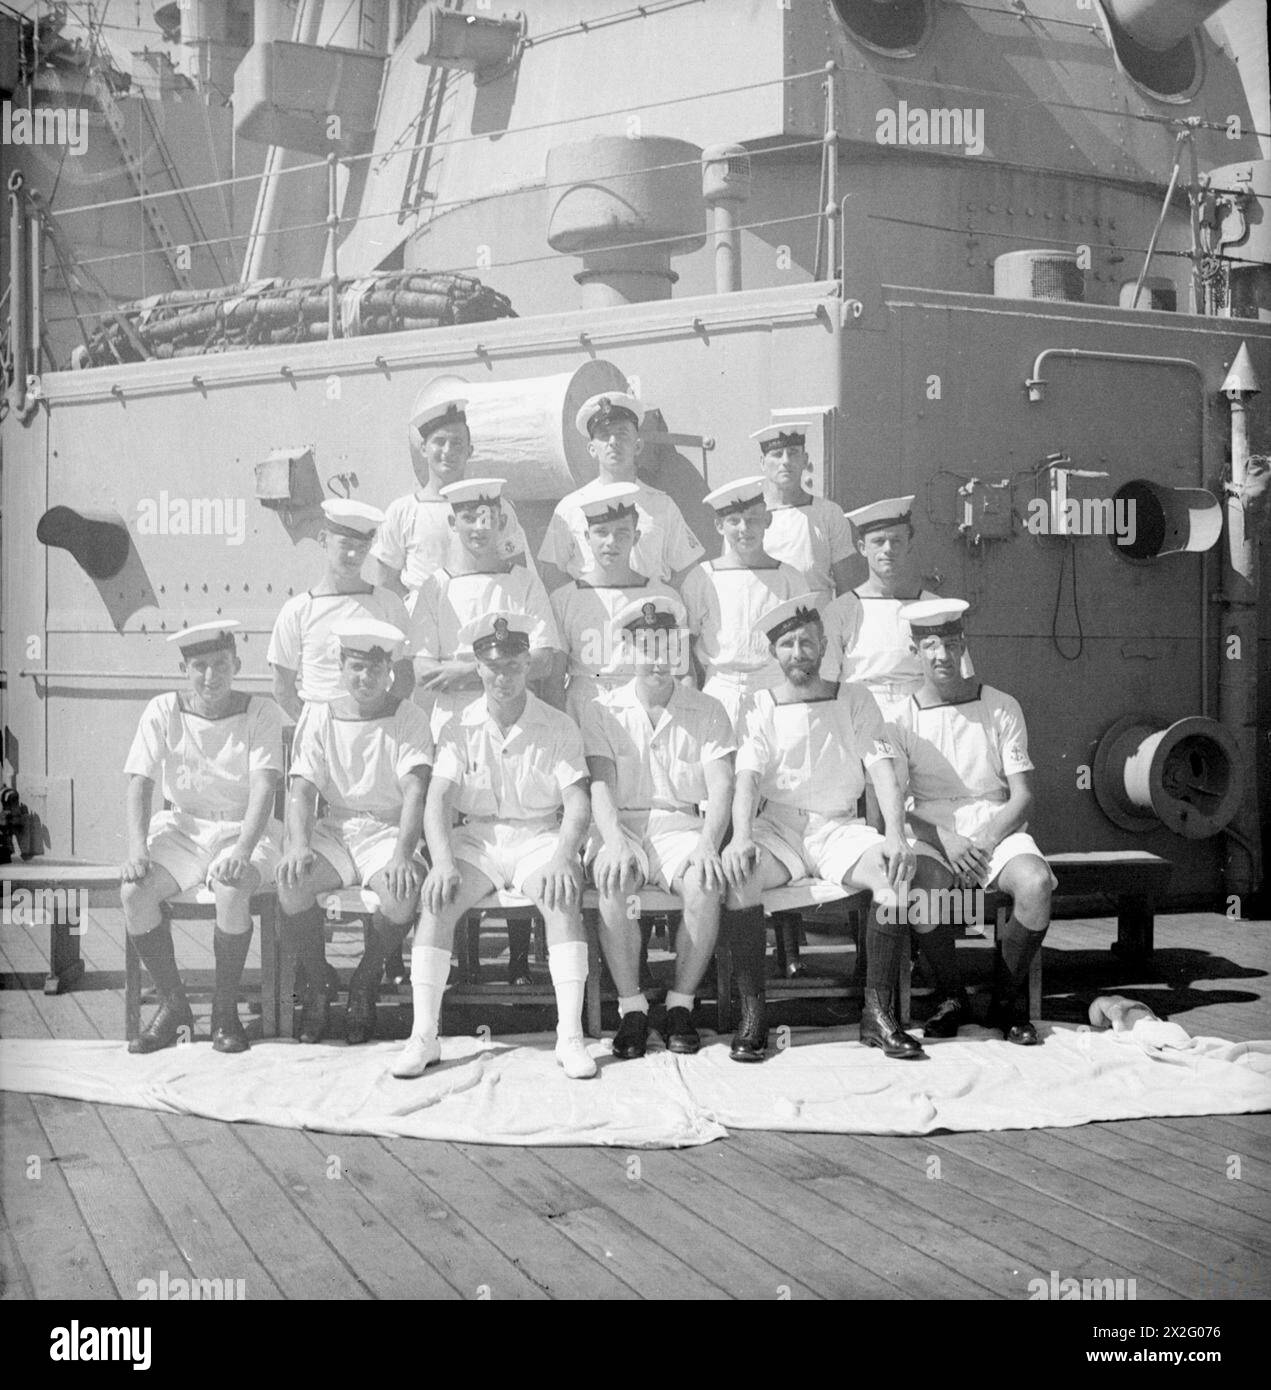 MÄNNER DER HMS SUFFOLK, EIN KREUZER, DER MIT ADMIRAL JAMES SOMERVILLES OSTFLOTTE DIENT. 12. DEZEMBER 1943, TRINCOMALEE. DIE MÄNNER SIND NACH STADT UND/ODER BEZIRK IN GRUPPEN UNTERTEILT. - Nord-London-Gruppe. Erste Reihe, von links nach rechts: Ab J Manlow, Wood Green; ab F Kiddy, Islington; PO C Worsfield, Hornsey; EA G Searle, Henfield; L/Sea E G Davies, Crouch End; L/Stoker G Burbage, Southgate. Zweite Reihe, von links nach rechts: O/Sea A Bass, Enfield; ab H Ablitt, L Edmonton; Stoker A Williams, Wood Green; ab D Bonnett, Southgate; Stoker L Tusson, L Edmonton. Dritte Reihe, von links nach rechts: L/Stoker T Hardy, Enfield; SPO N Stockfoto